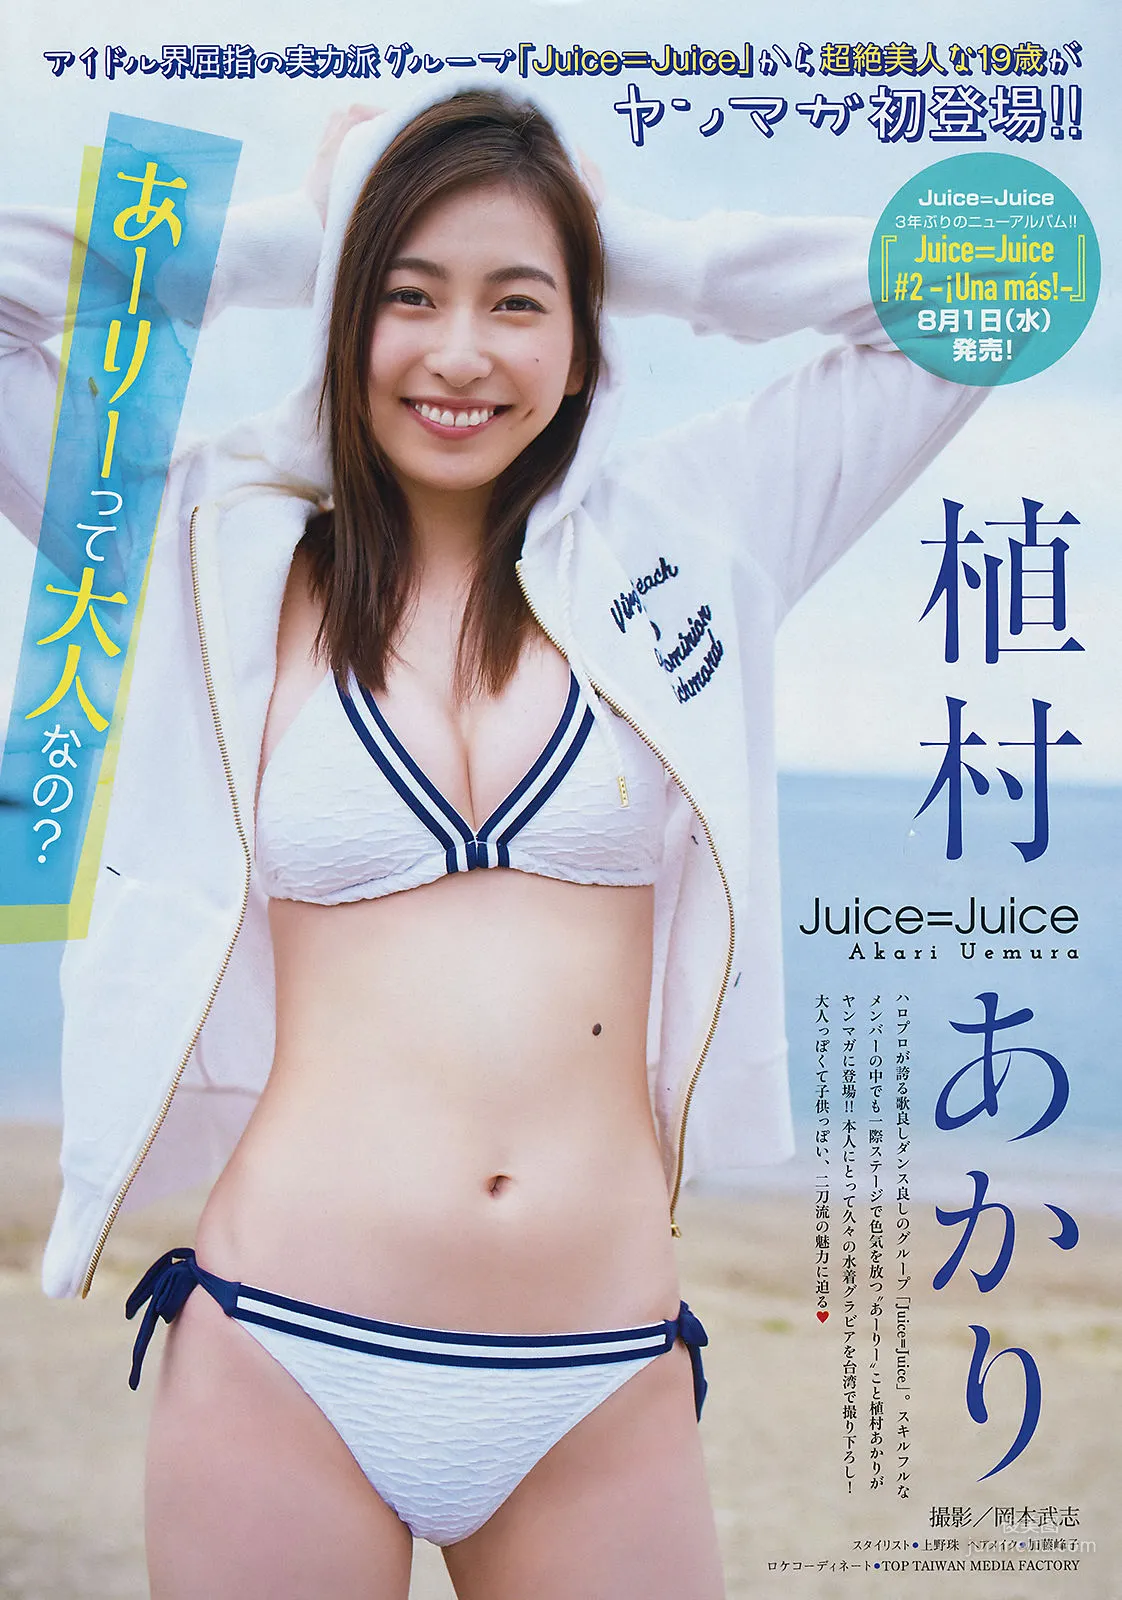 [Young Magazine] 植村あかり 林ゆめ 2018年No.31 写真杂志2